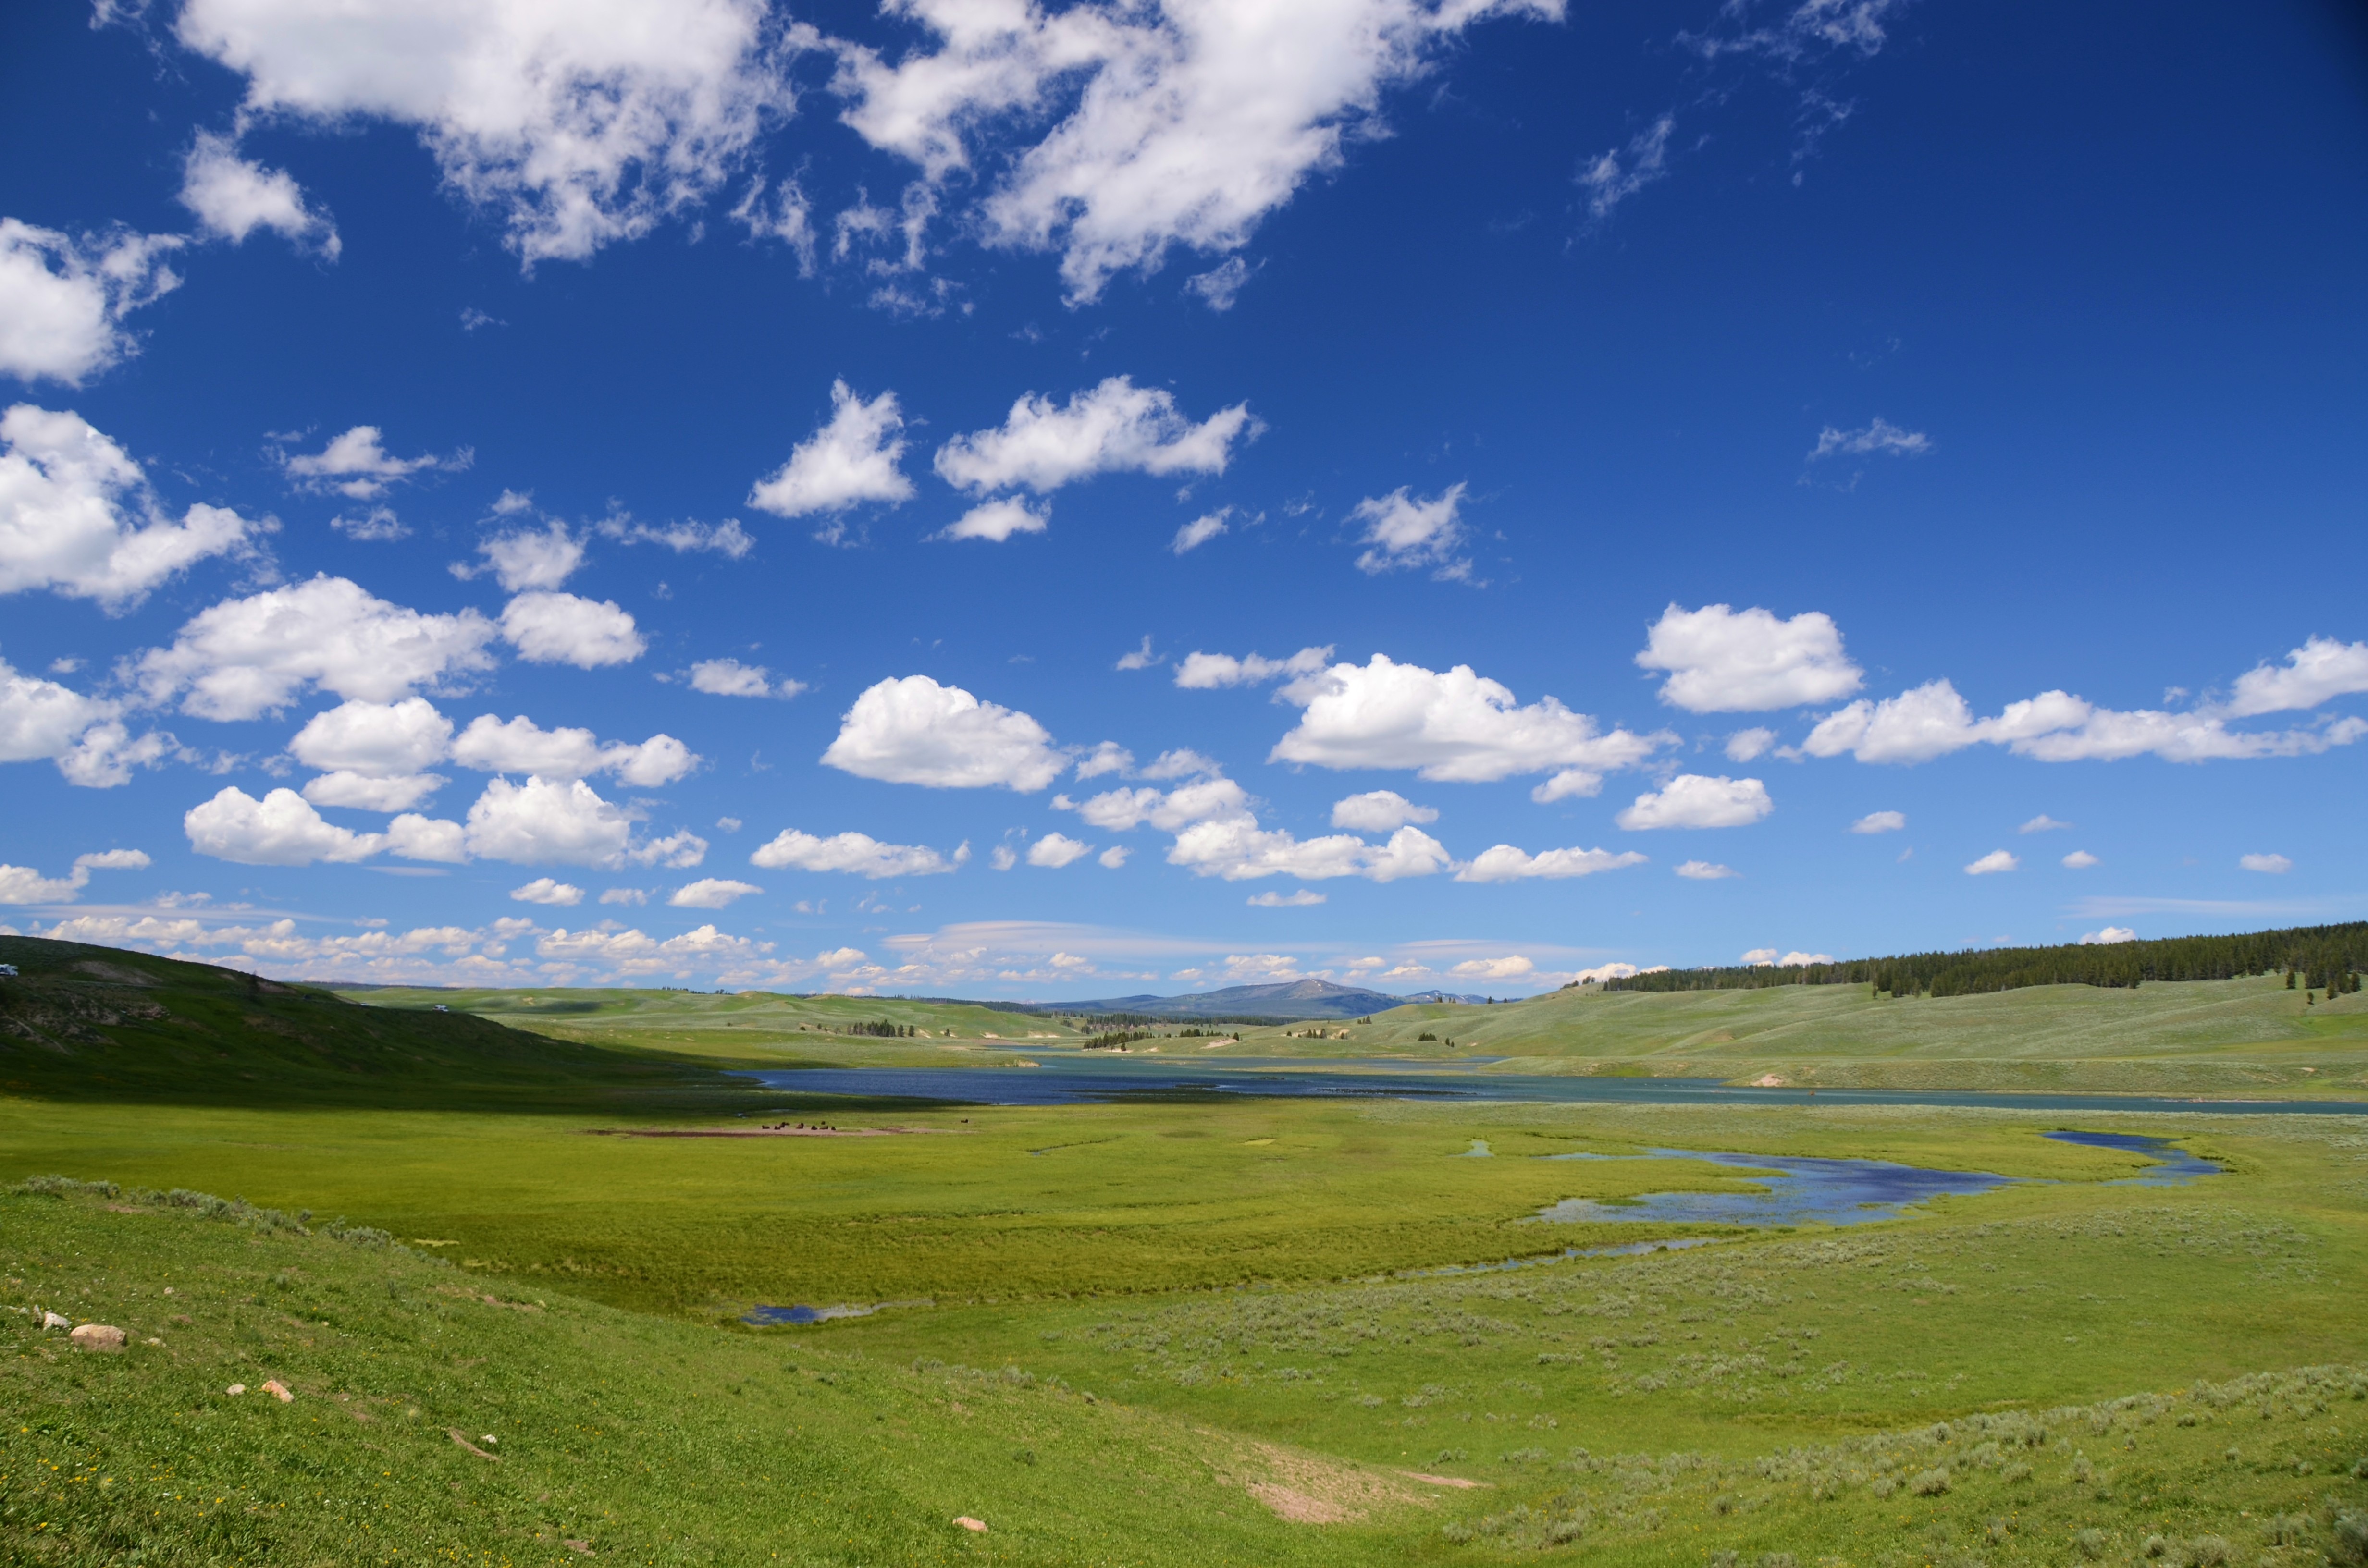 Бесплатное фото Обмелевшая река на летнем поле под чистым голубым небом